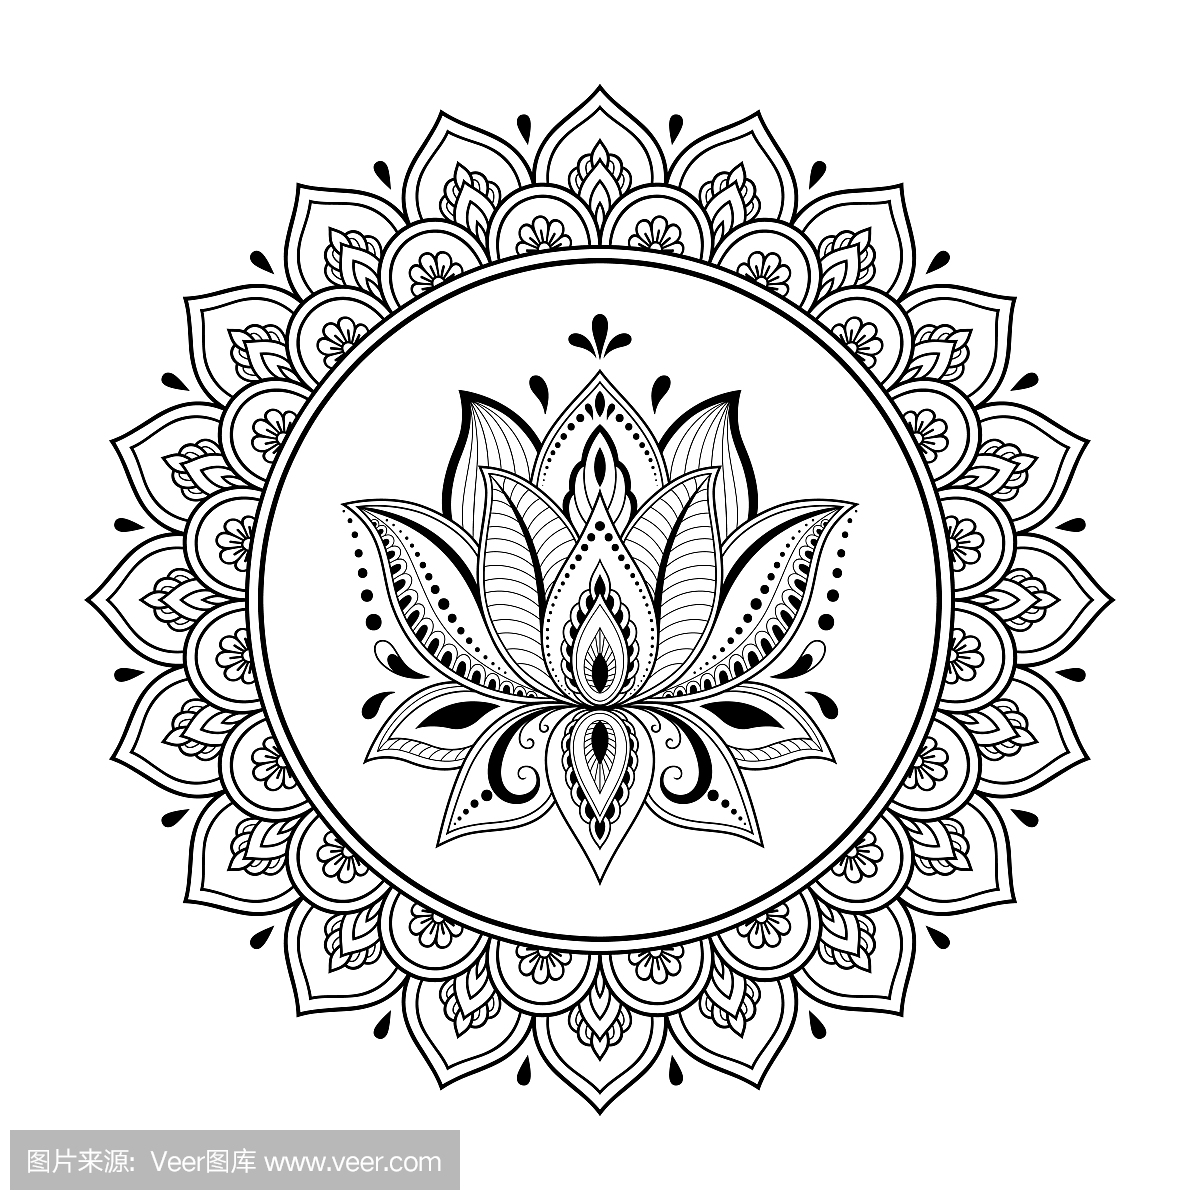 圆形图案为曼陀罗形式的指甲花,曼海蒂,纹身,装